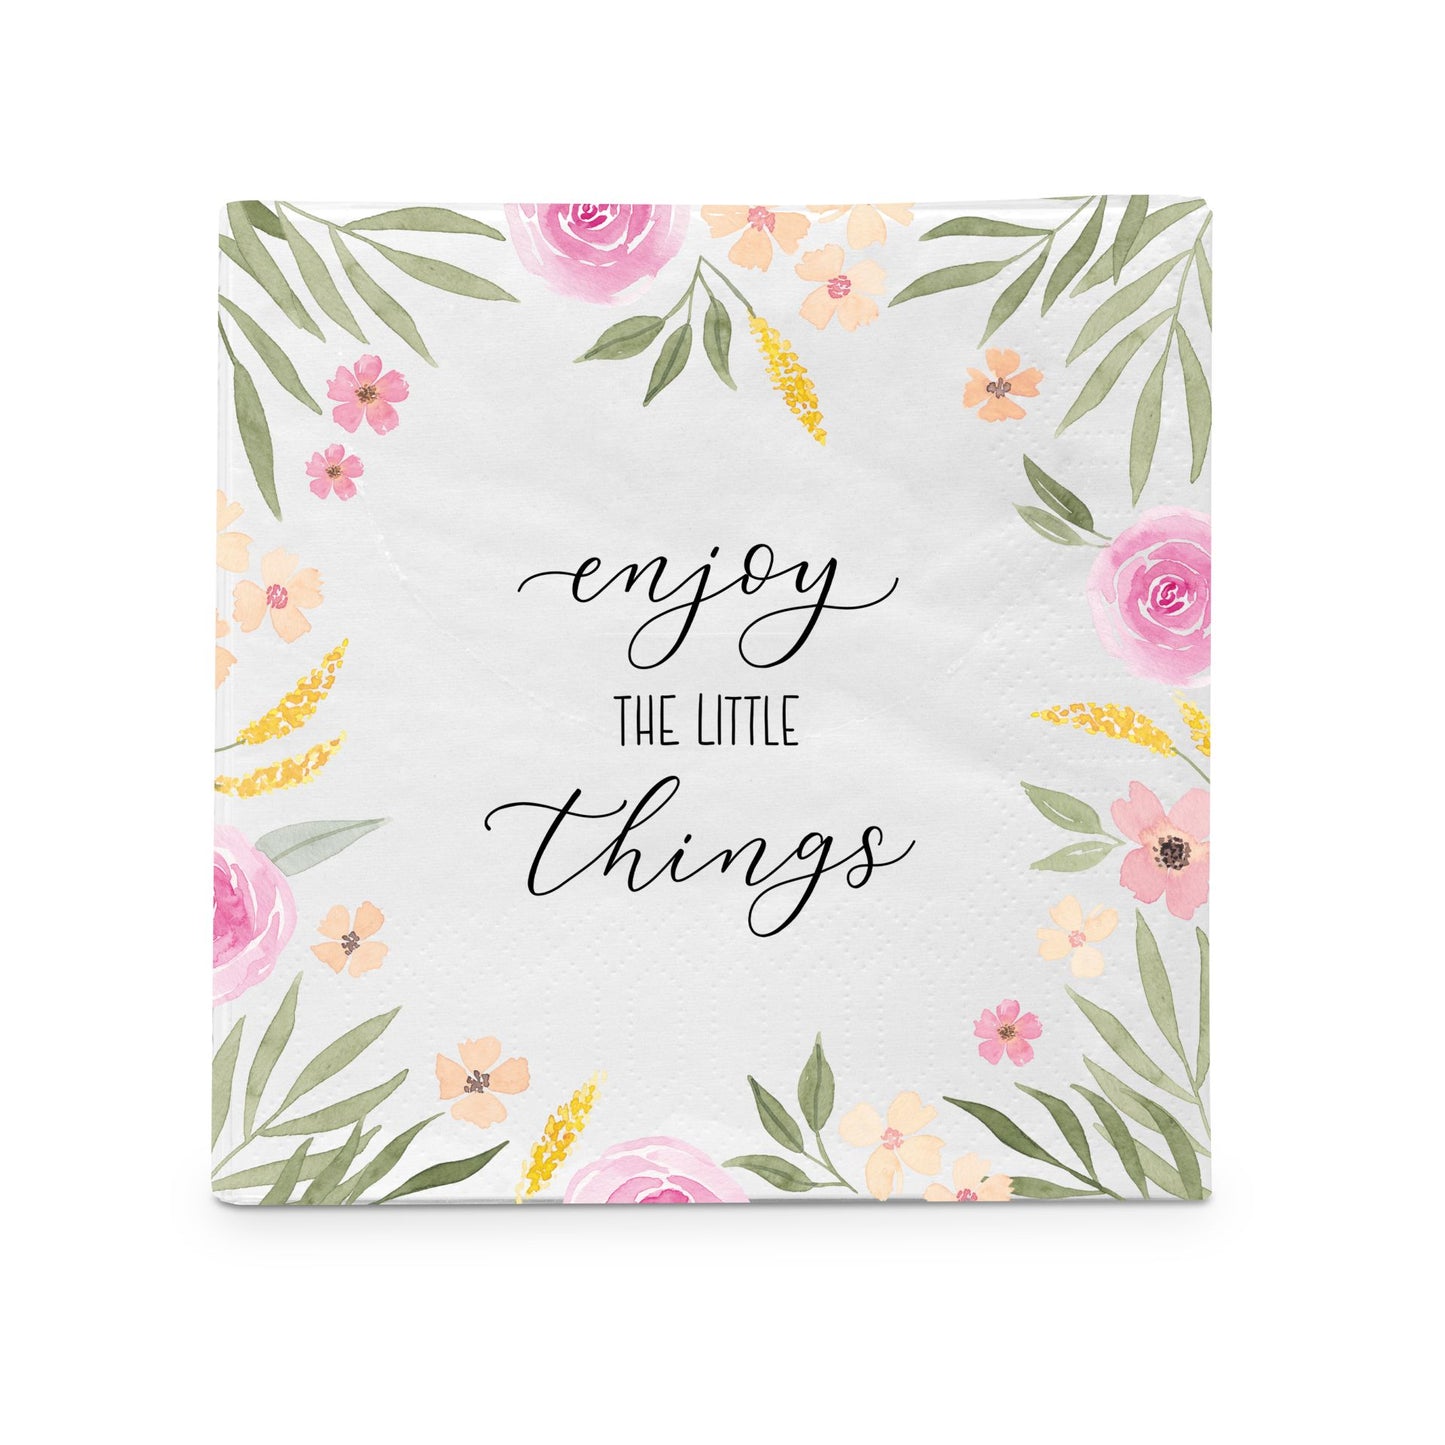 Geschenk-Set "Enjoy the little things"